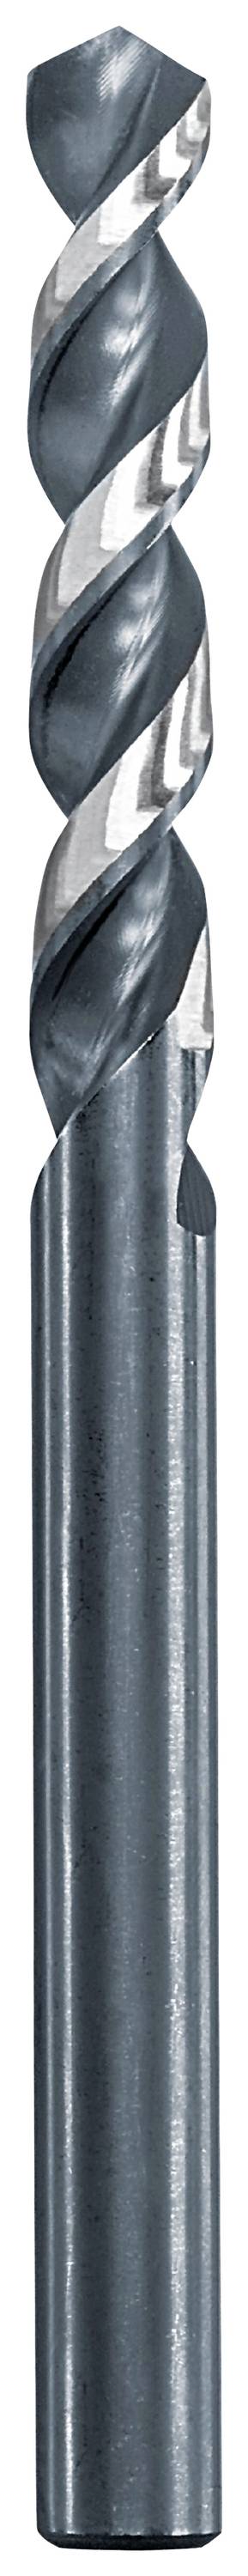 KWB 258635 Metall-Spiralbohrer 3.5 mm Gesamtlänge 70 mm 1 St.